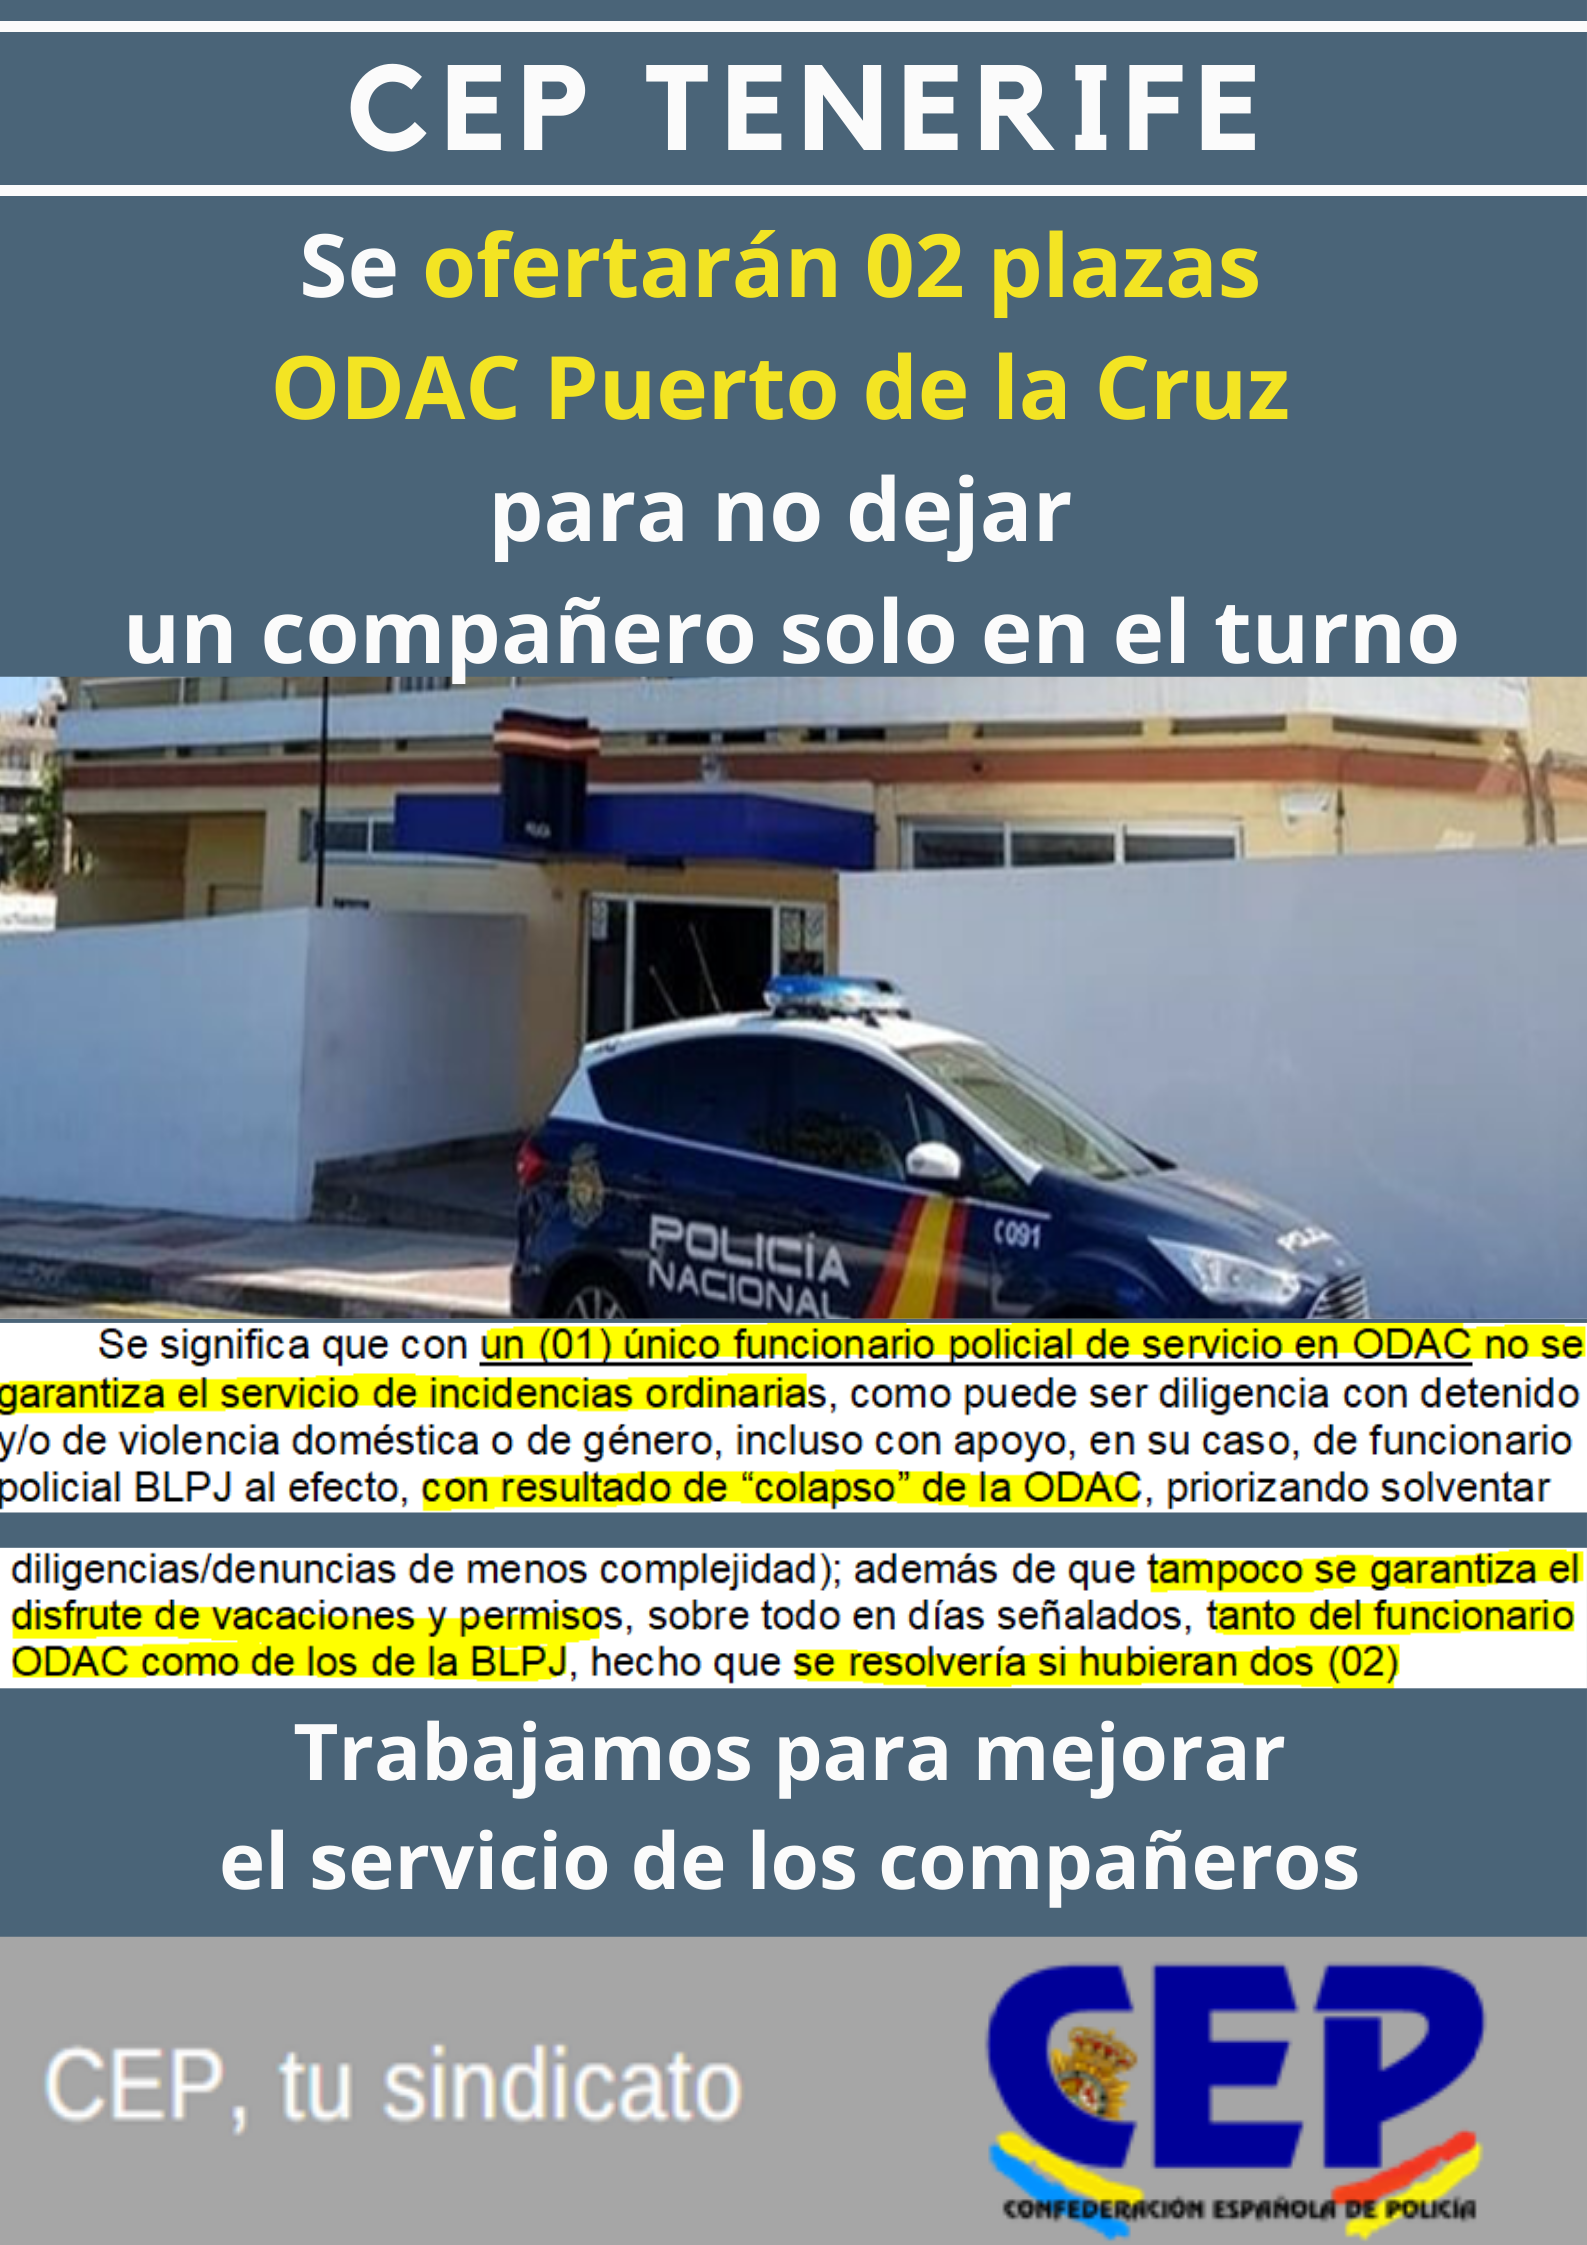 Se ofertarán dos plazas ODAC Puerto de la Cruz, evitando así que un compañero quede solo en el turno